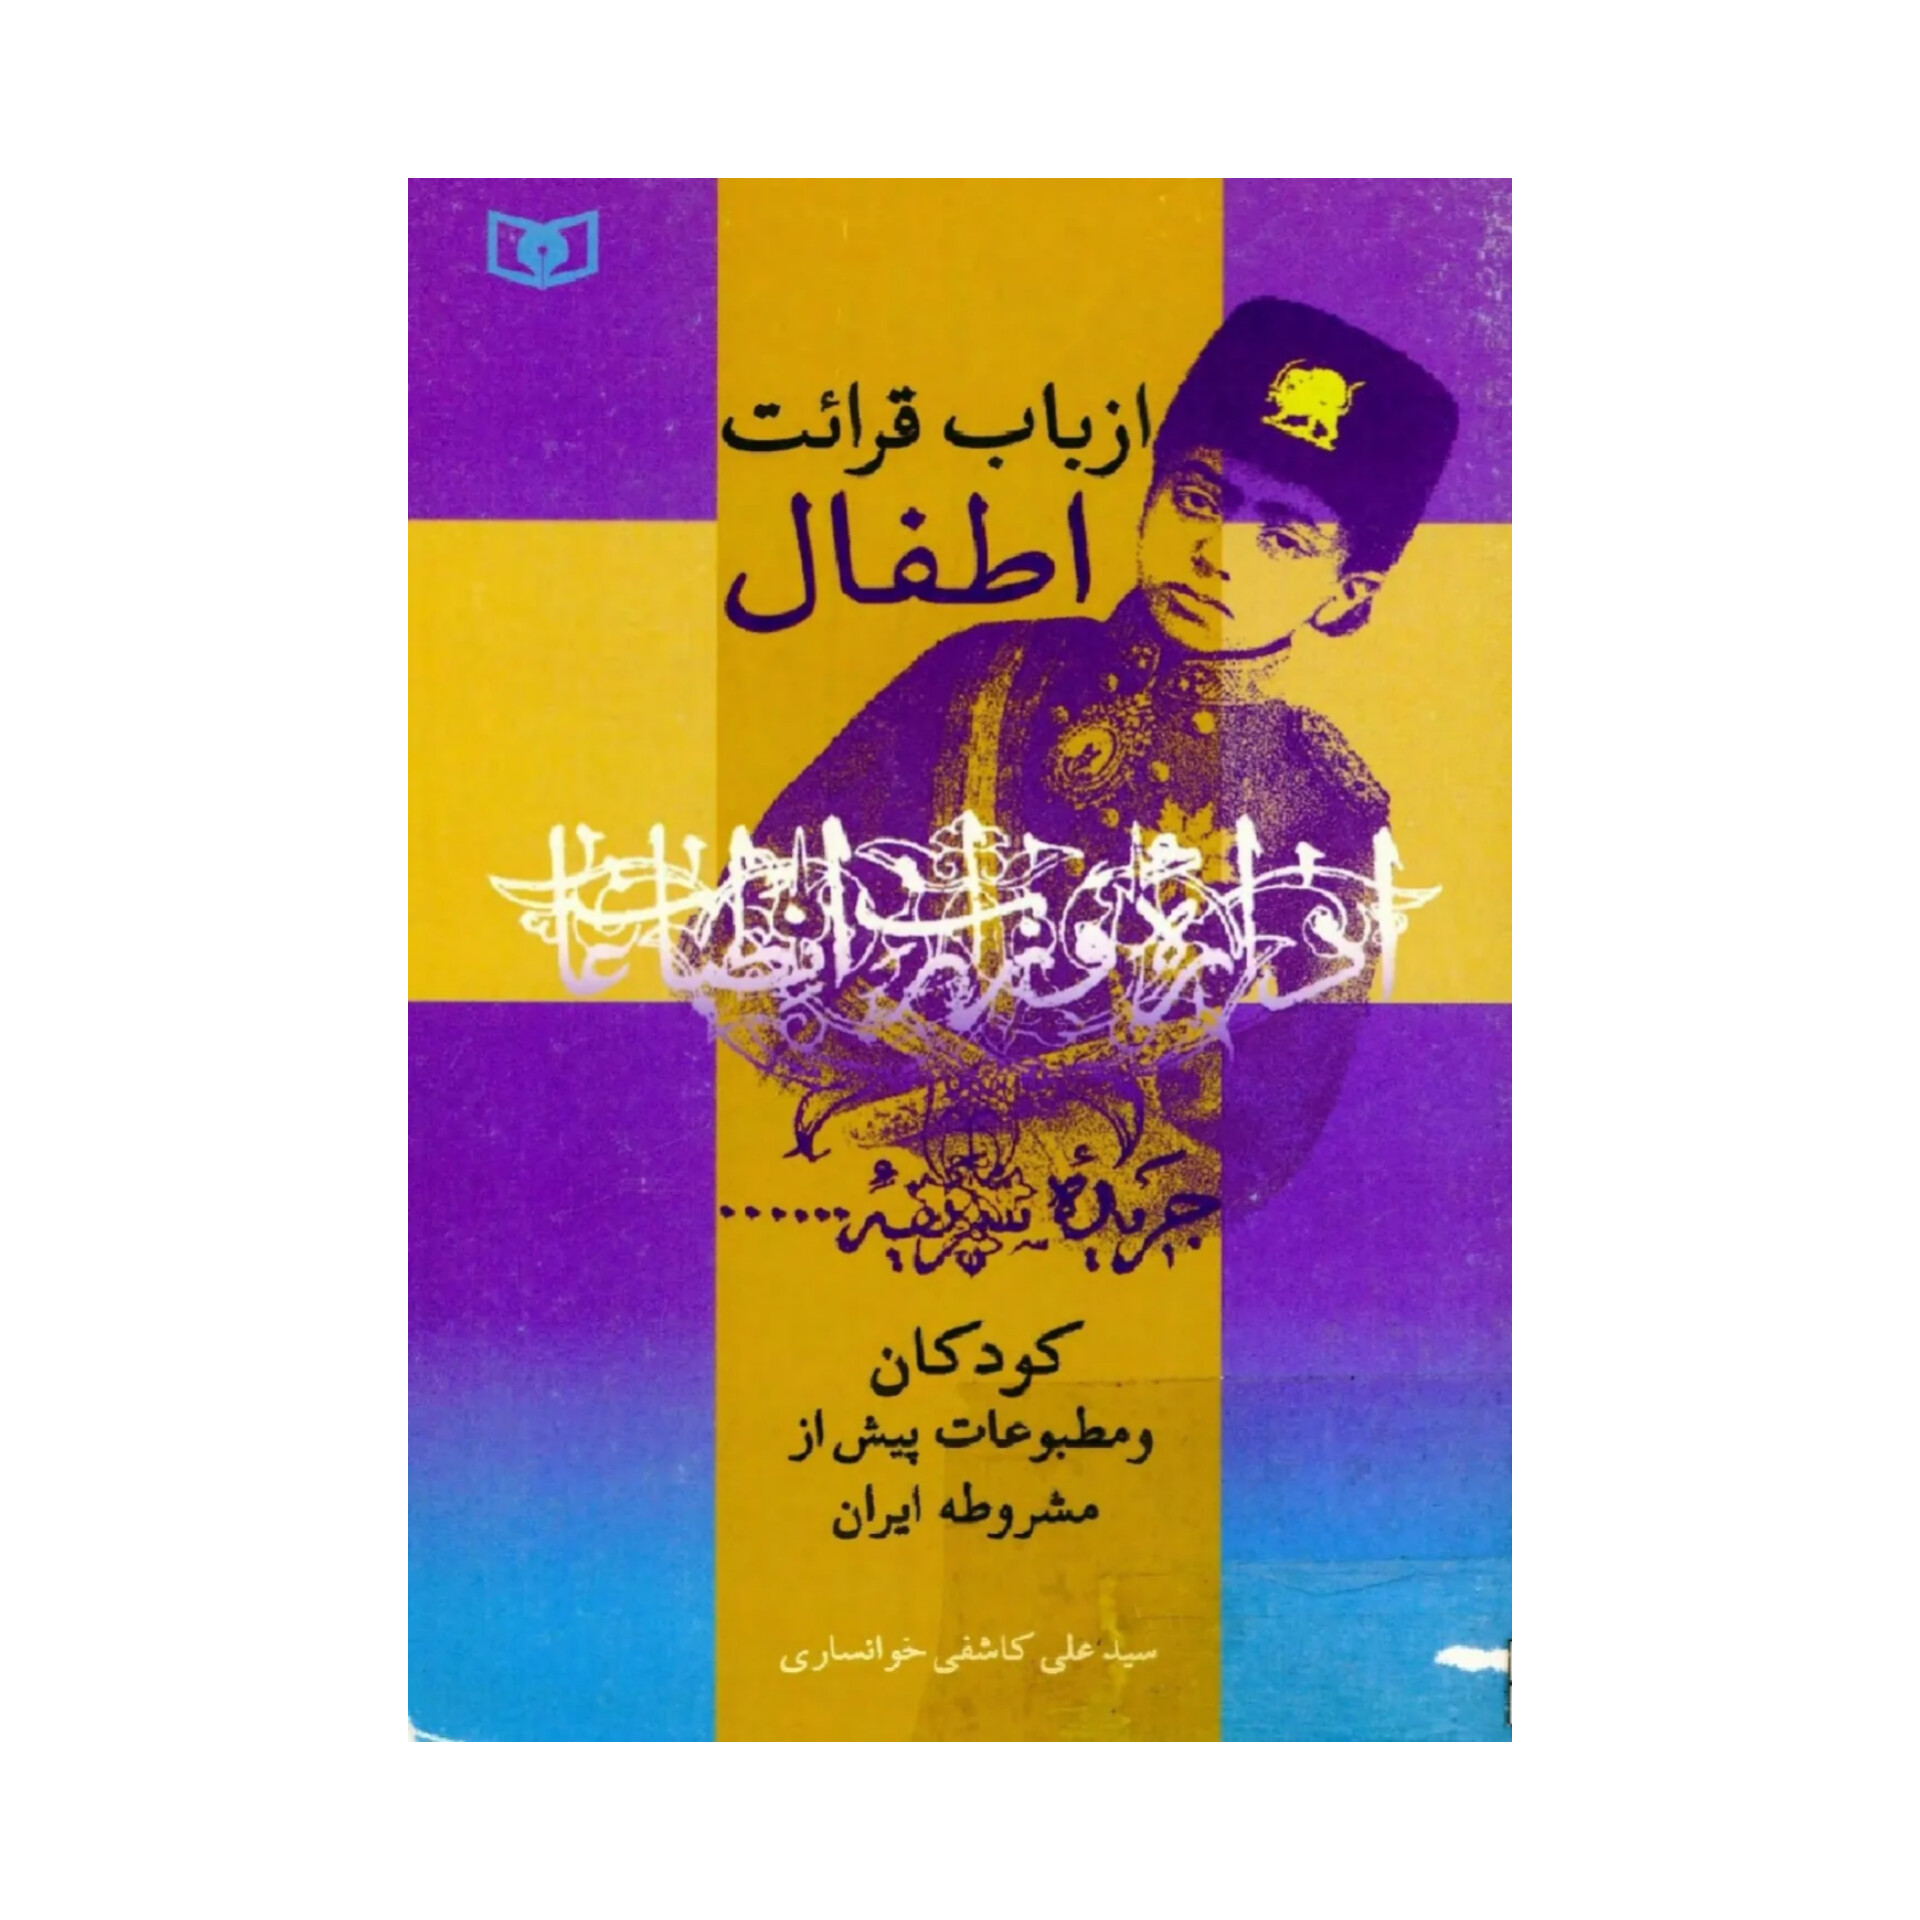 کتاب از باب قرائت اطفال: کودکان و مطبوعات پیش از مشروطه ایران/ سیدعلی کاشفی خوانساری